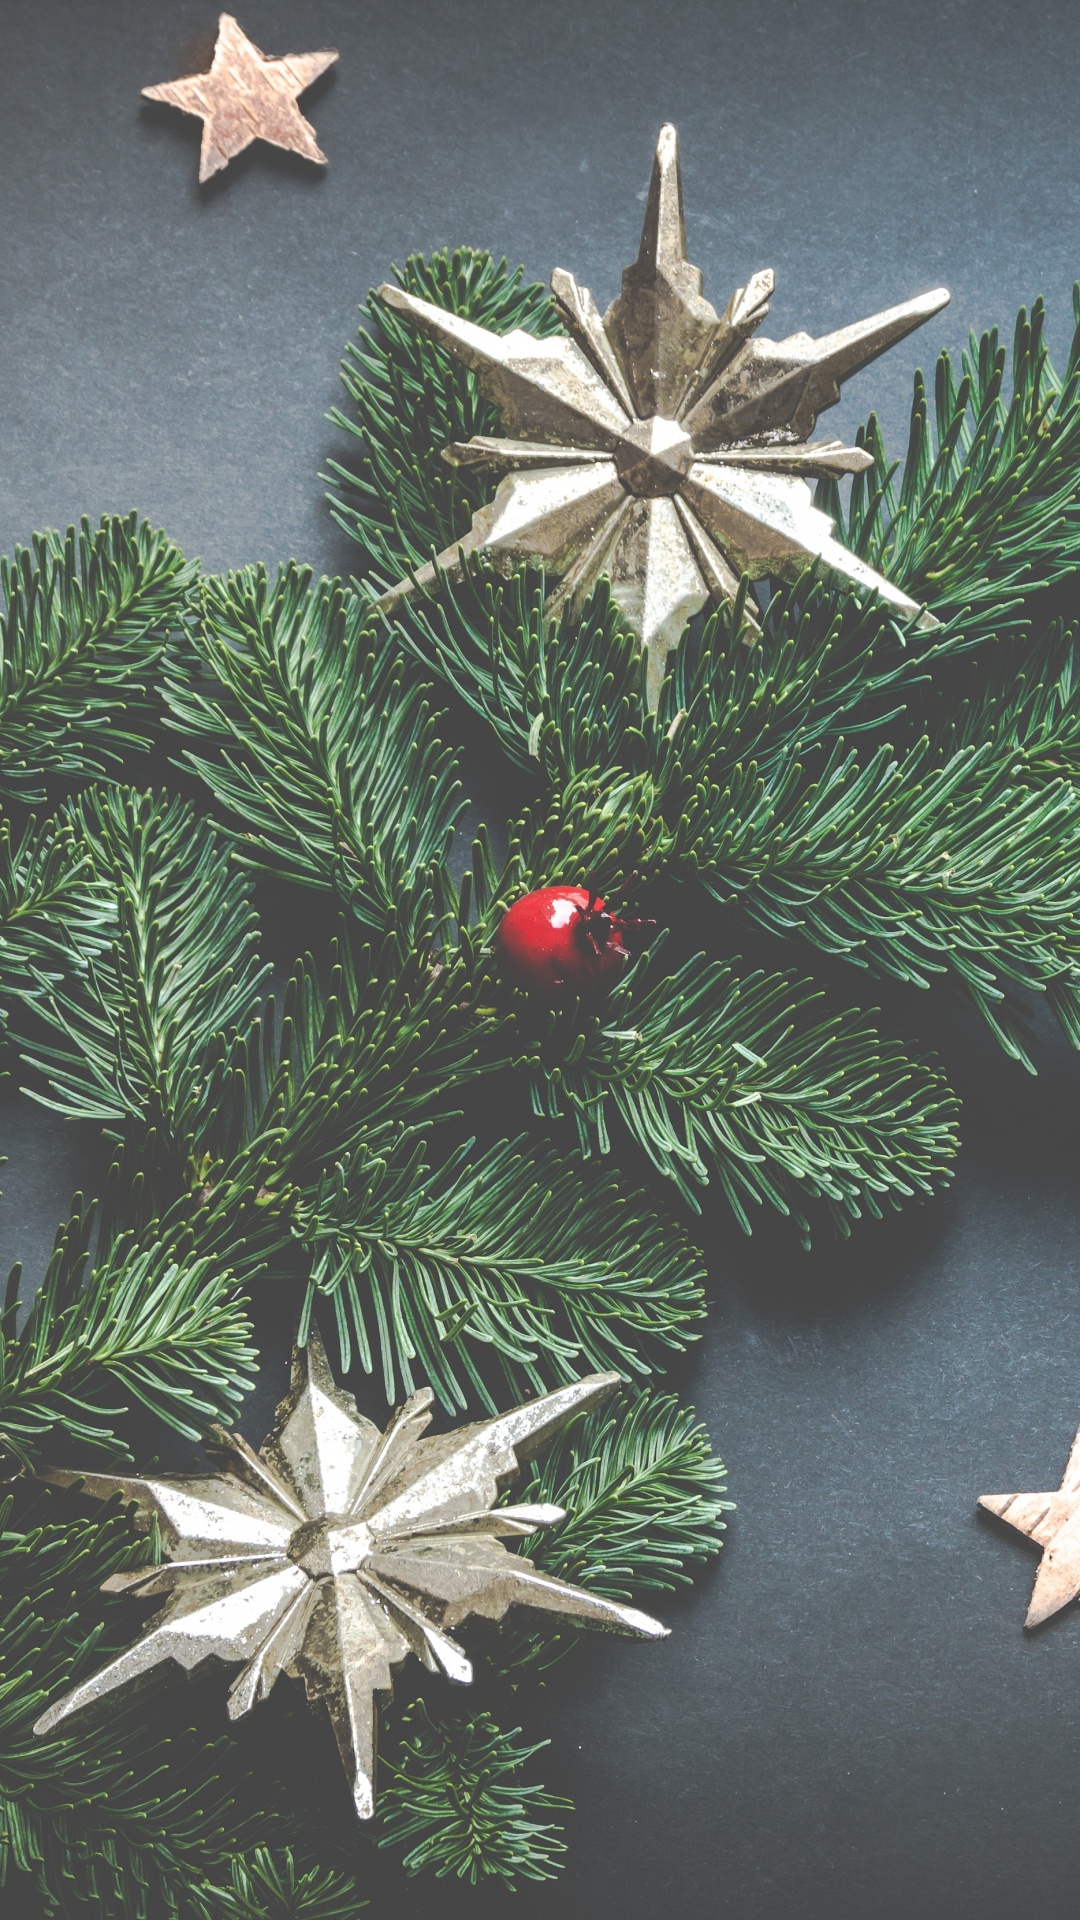 圣诞节那天, 圣诞节的装饰品, 俄勒冈州松树, 圣诞节, 节日装饰品 壁纸 1080x1920 允许